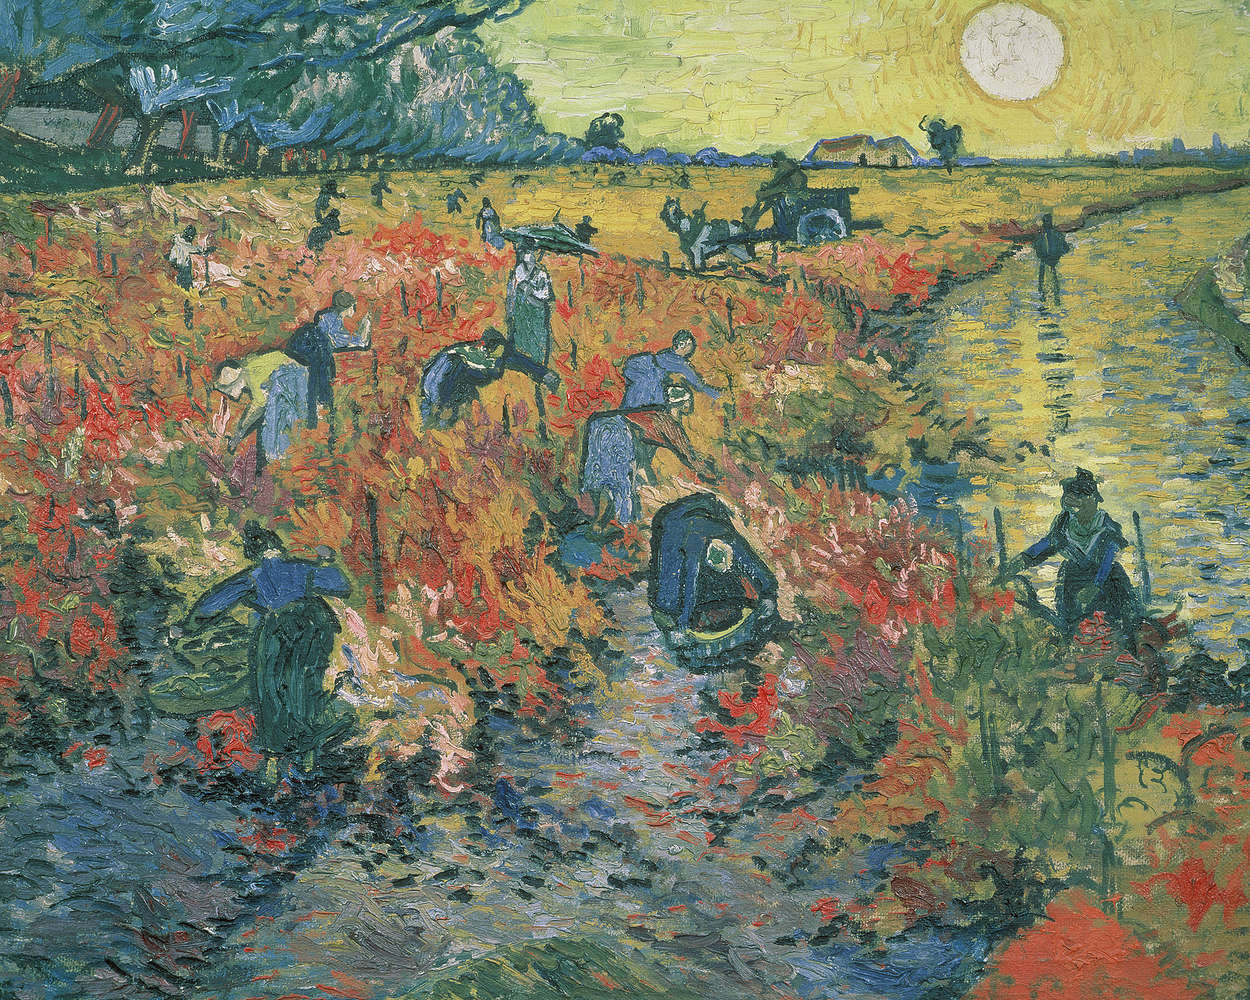             Red vineyards" mural by Vincent van Gogh
        